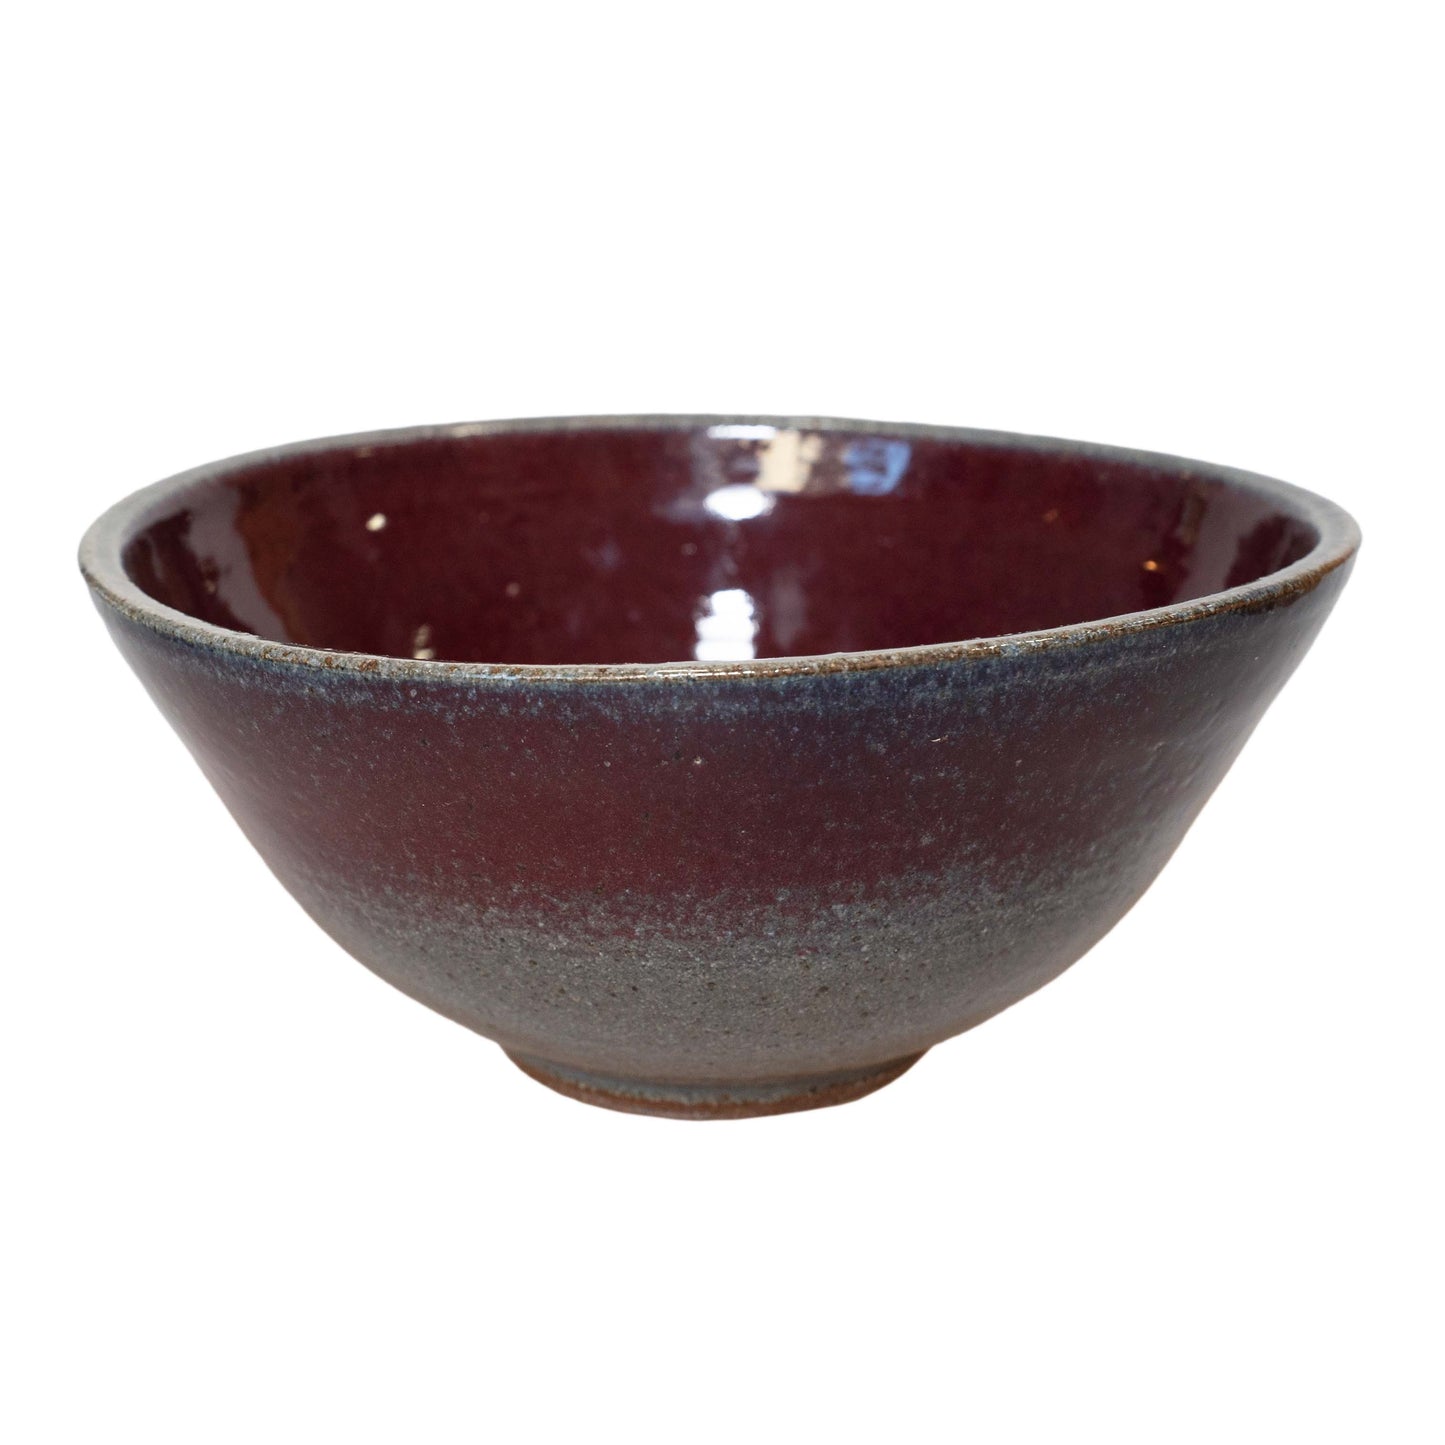 Cranberry and Gray Handmade Glazed Ceramic Bowl